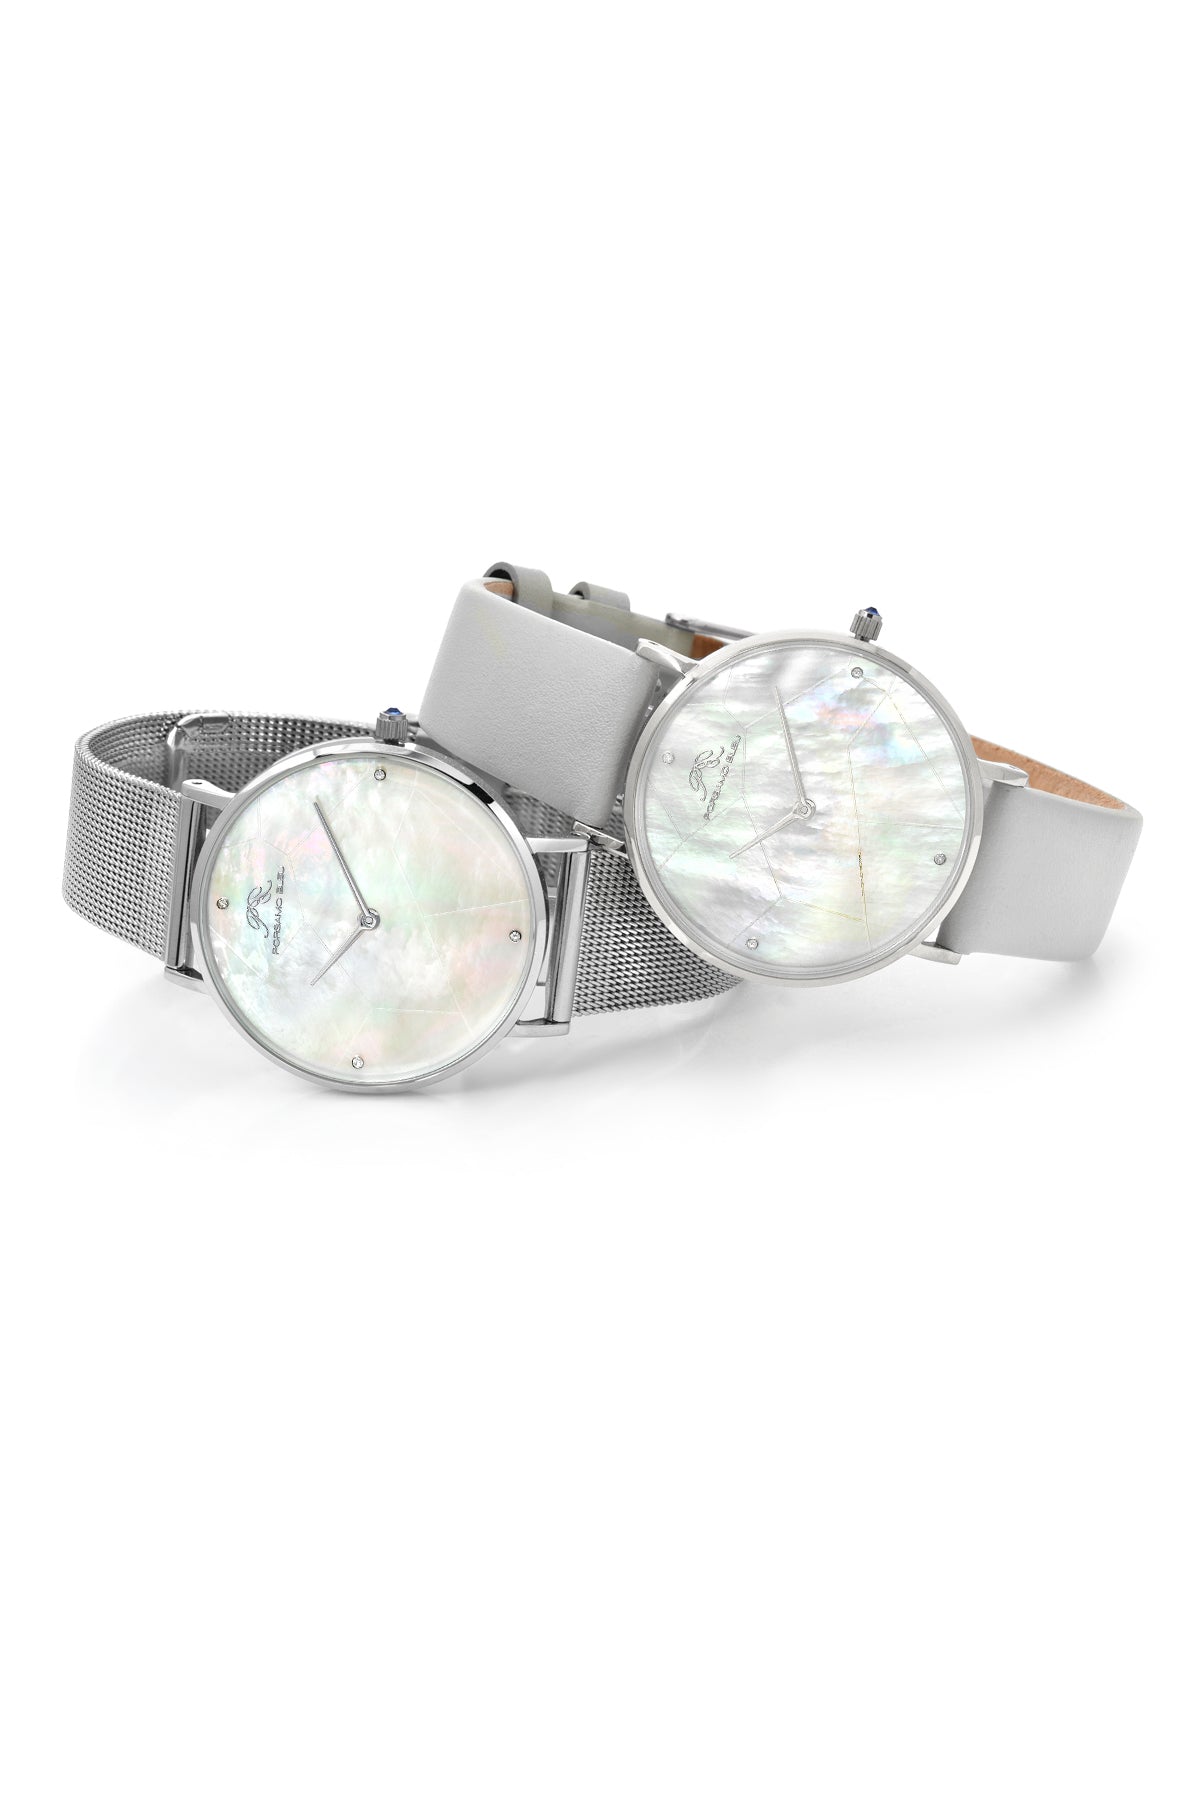 Porsamo Bleu Paloma luxury diamond women's watch, interchangeable bands, silver, white, grey 851APAS